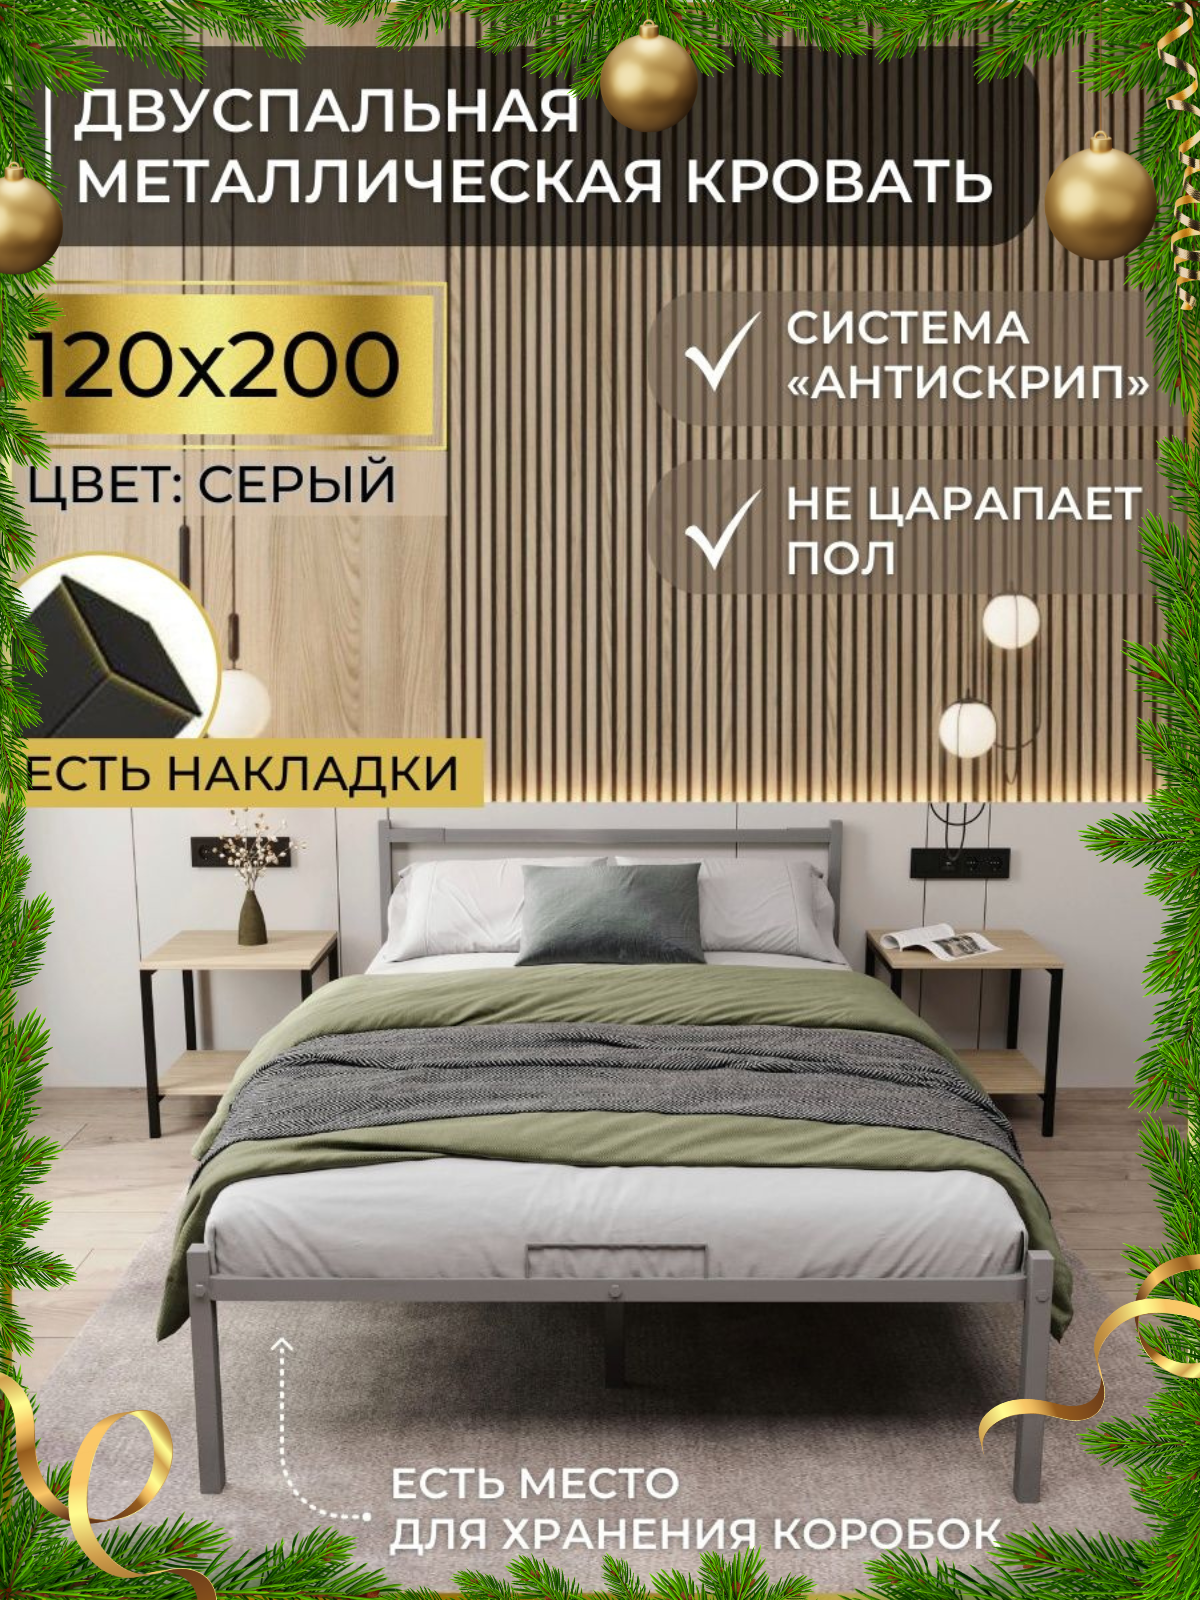 Кровать двуспальная металлическая серая 120х200